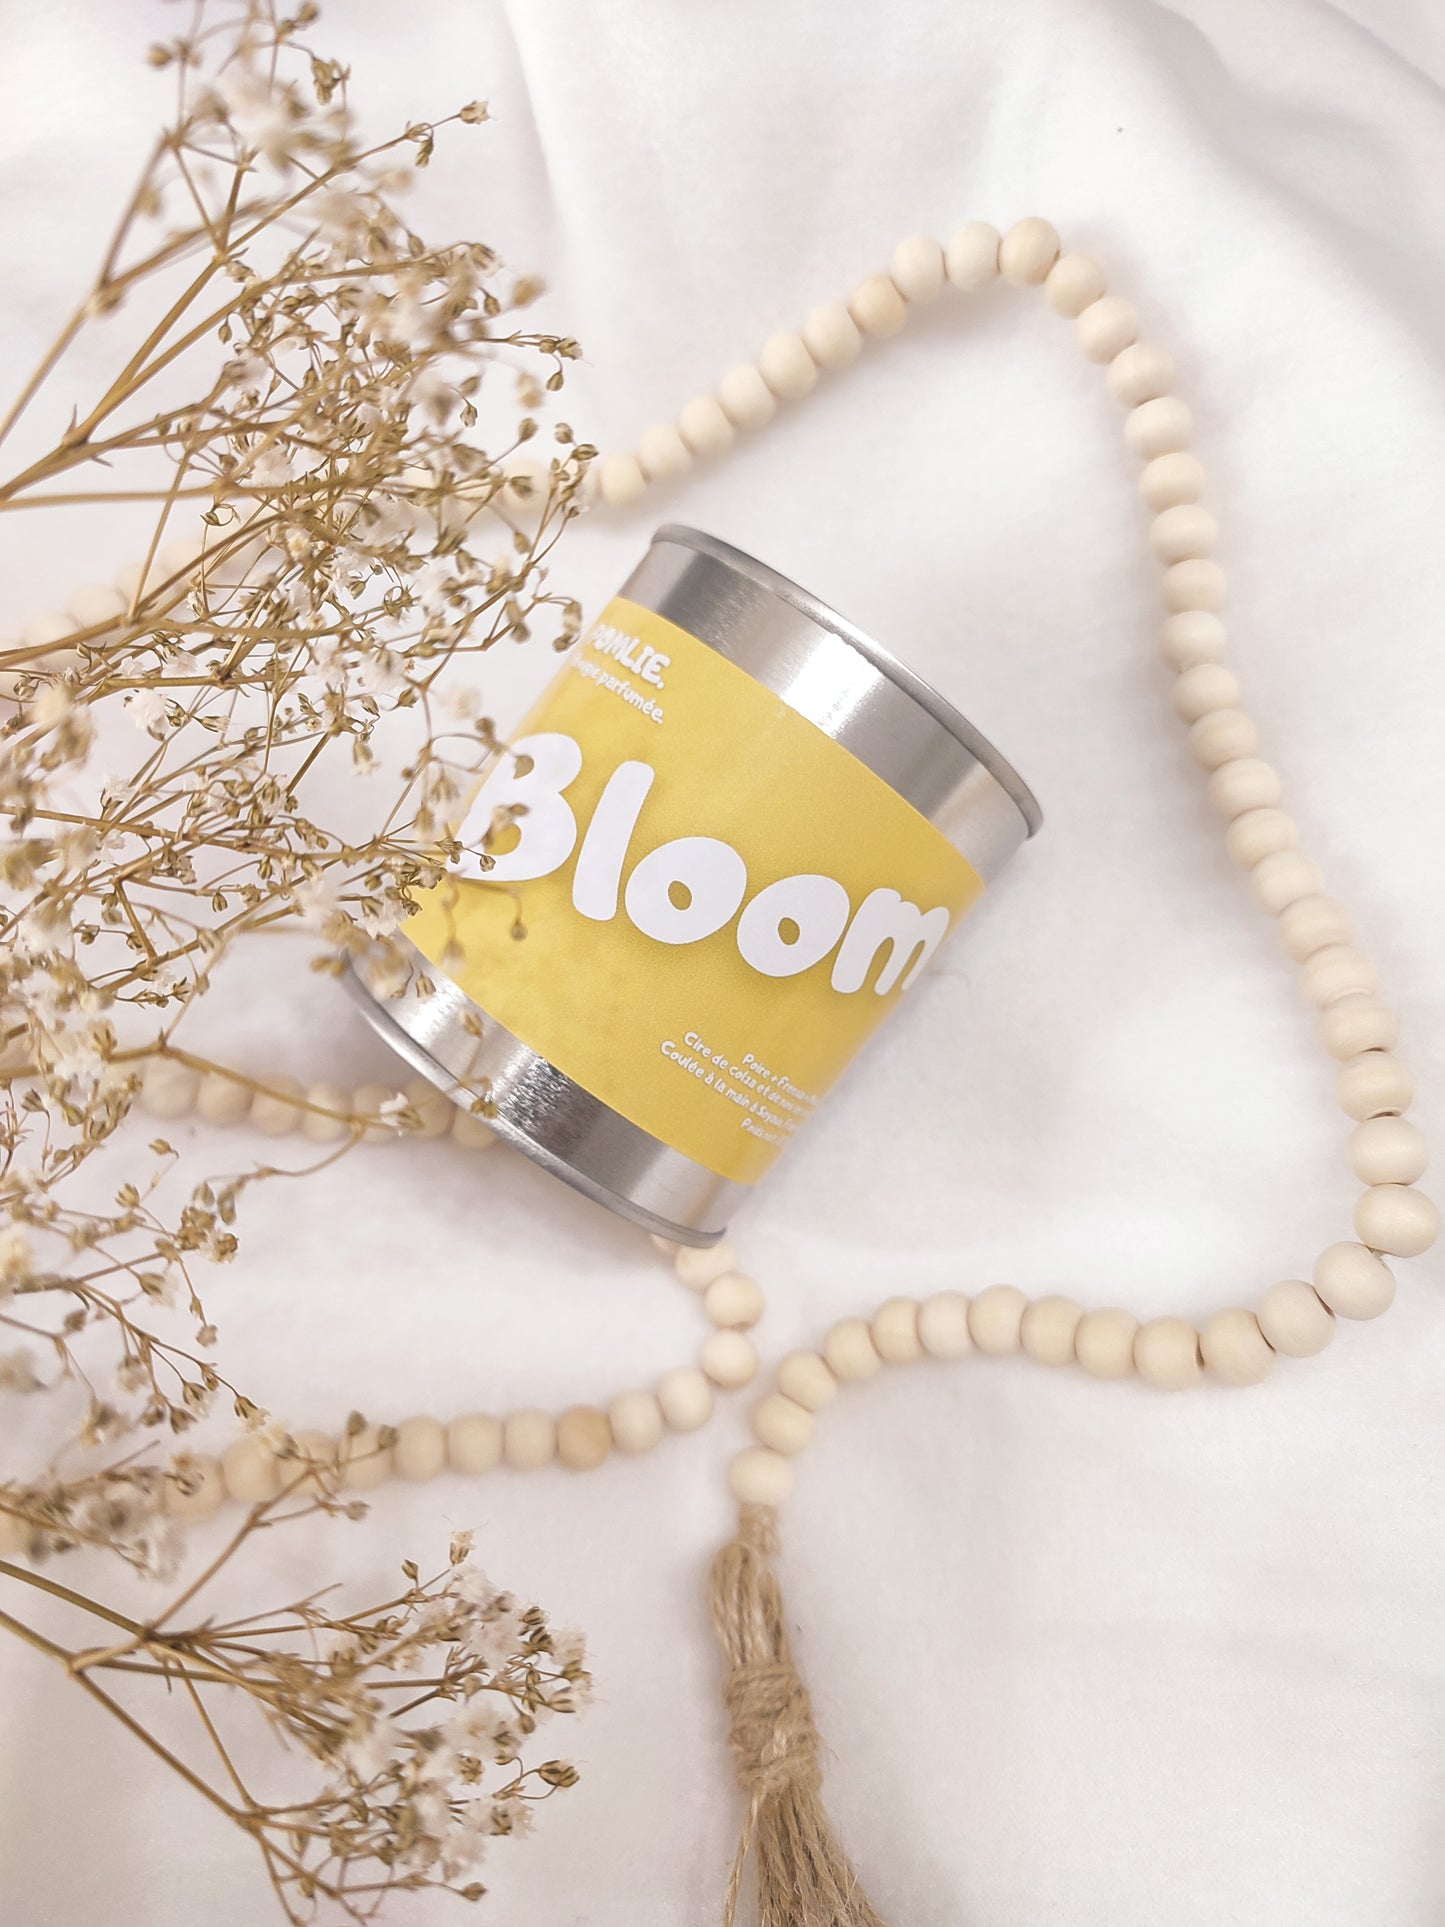 Bougie parfumée Bloom jaune avec bijoux et fleurs séchées.